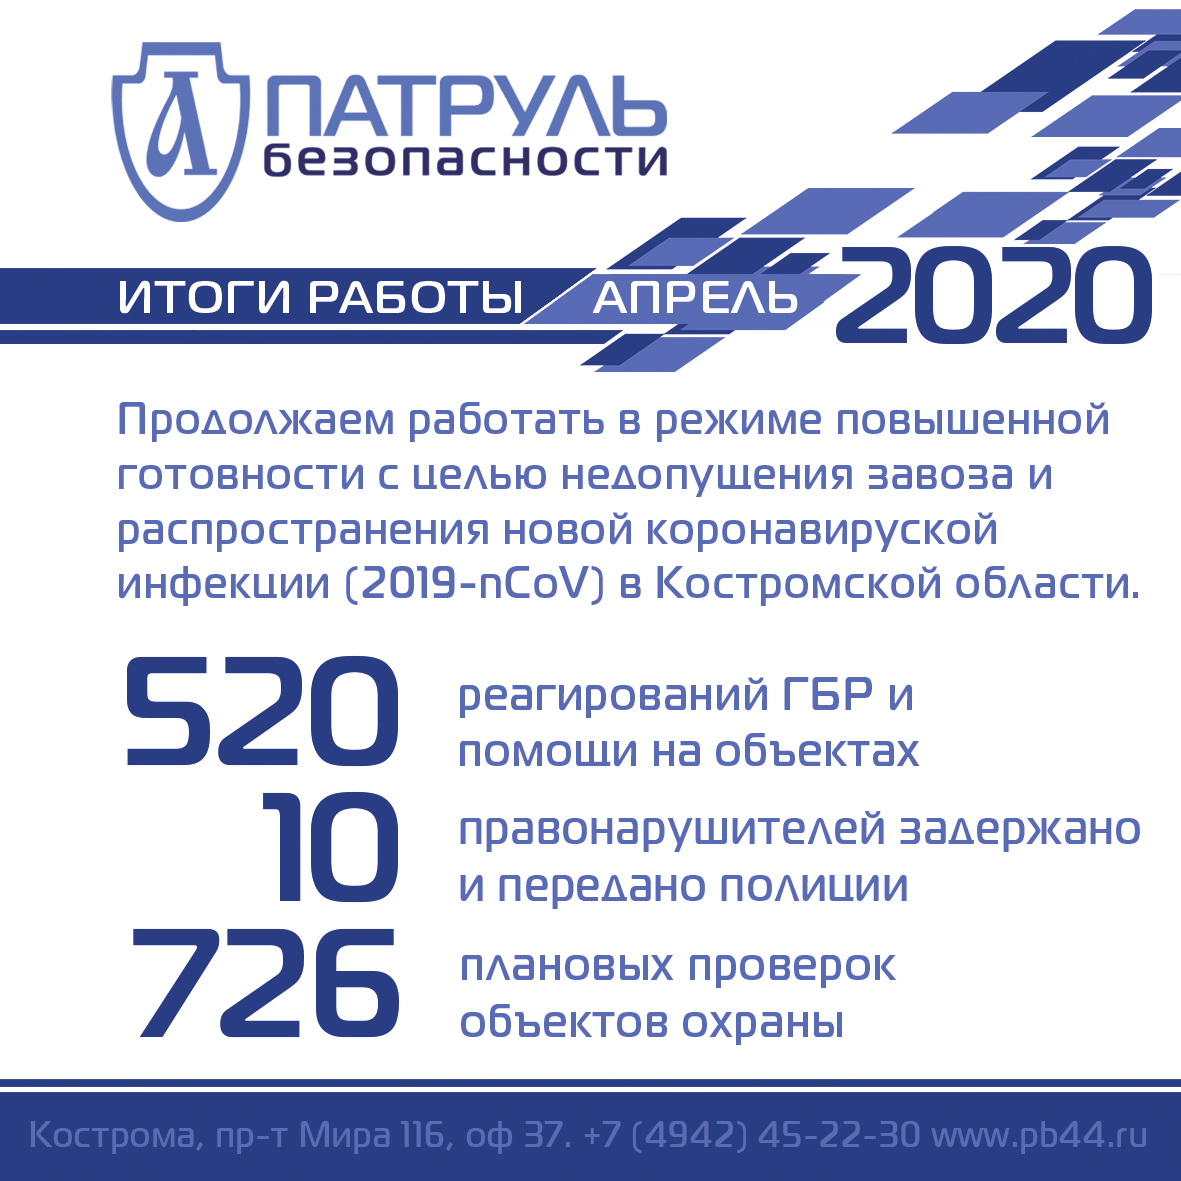 Итоги работы компании "Патруль Безопасности" в апреле 2020 года в сфере обеспечения безопасности в Костроме и Костромской области